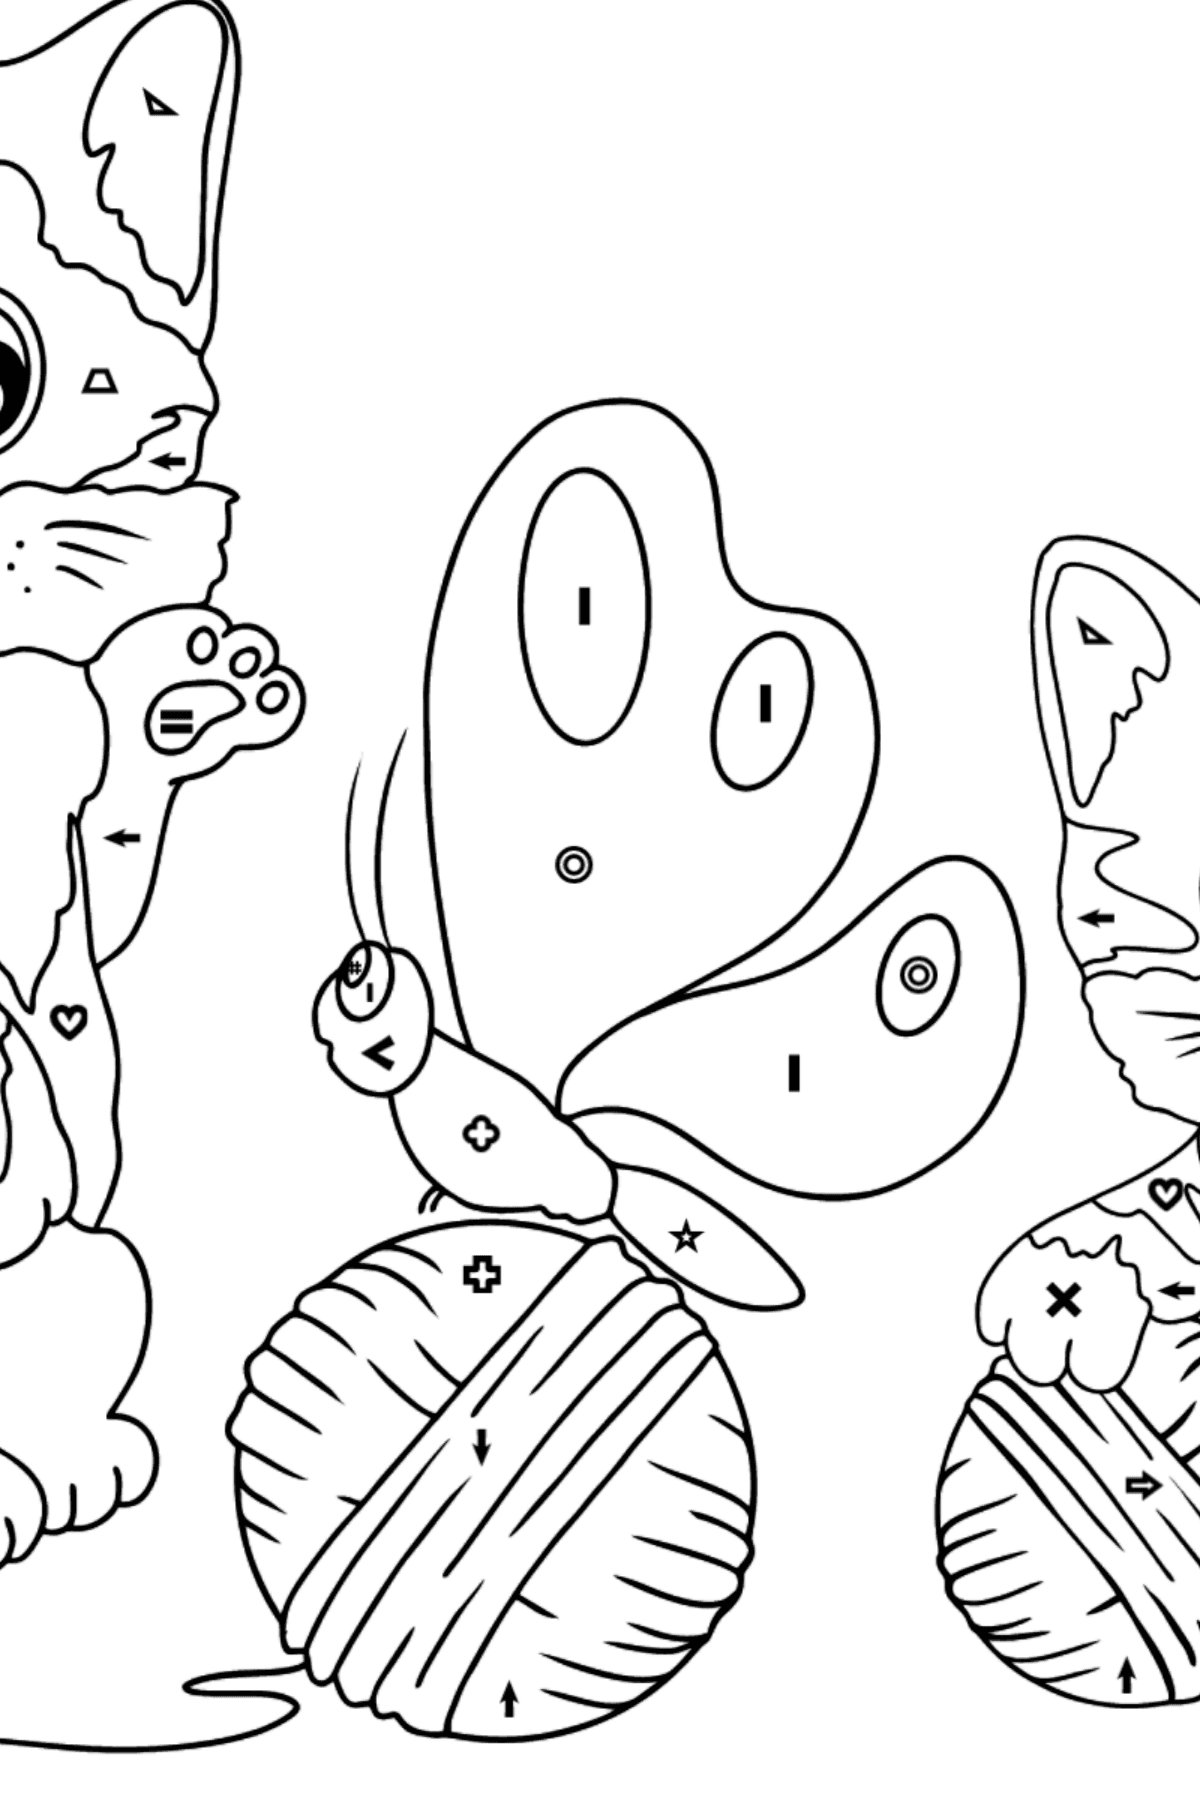 Tegning til fargelegging glade kattunger (vanskelig) - Fargelegge etter symboler og geometriske former for barn